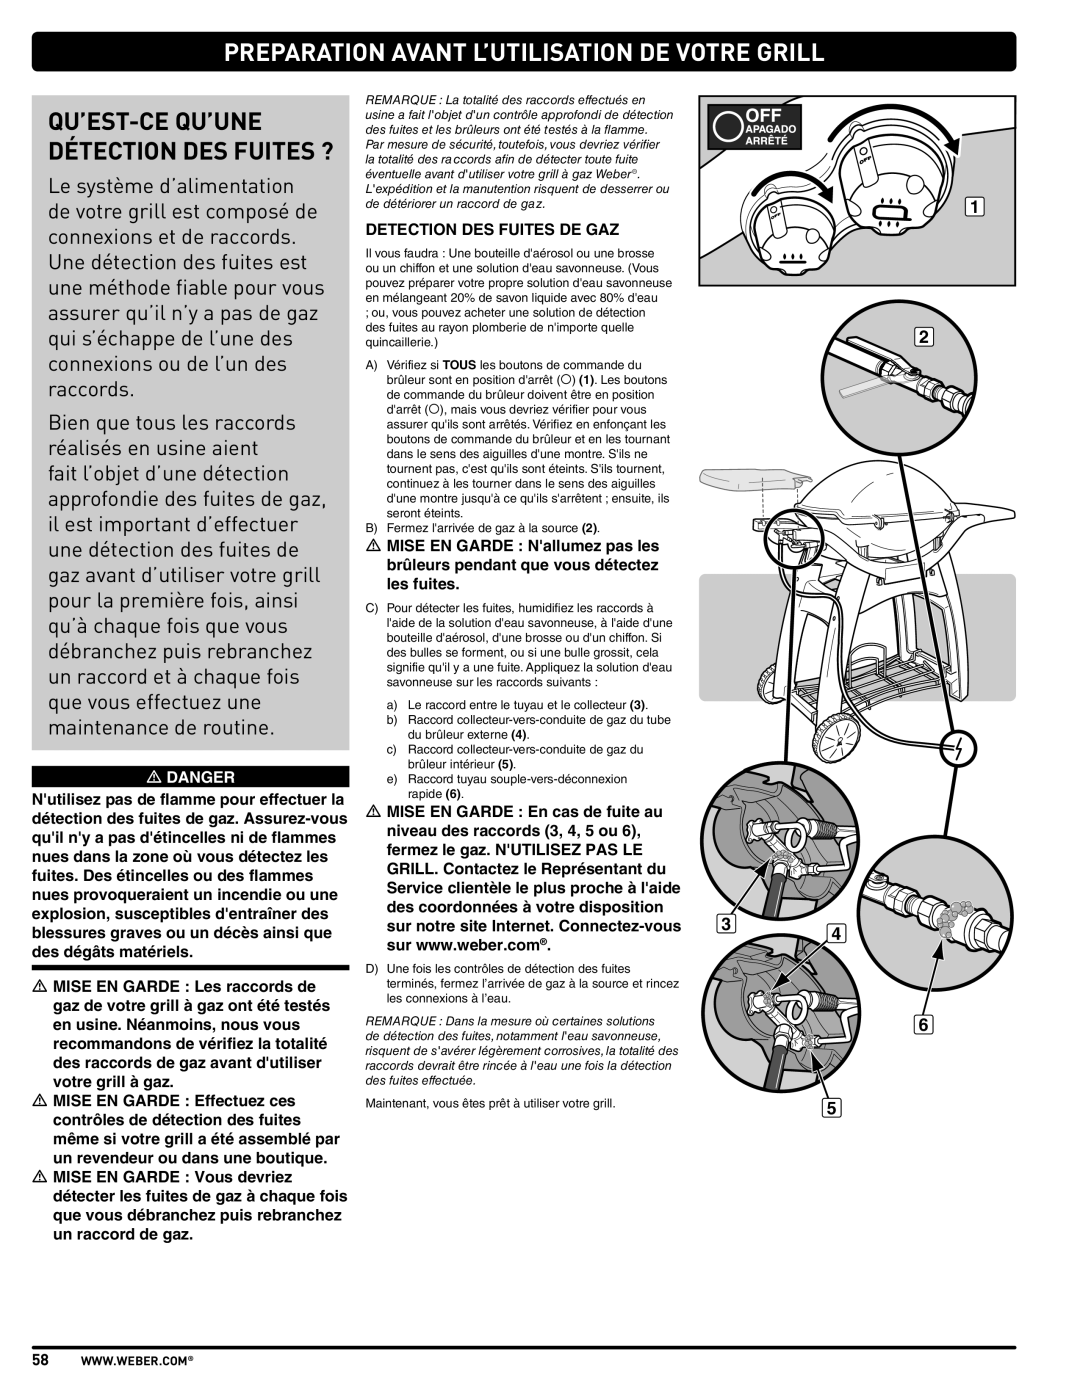 Weber 57515 manual Preparation Avant L’Utilisation De Votre Grill, Qu’Est-Ce Qu’Une Détection Des Fuites ? 